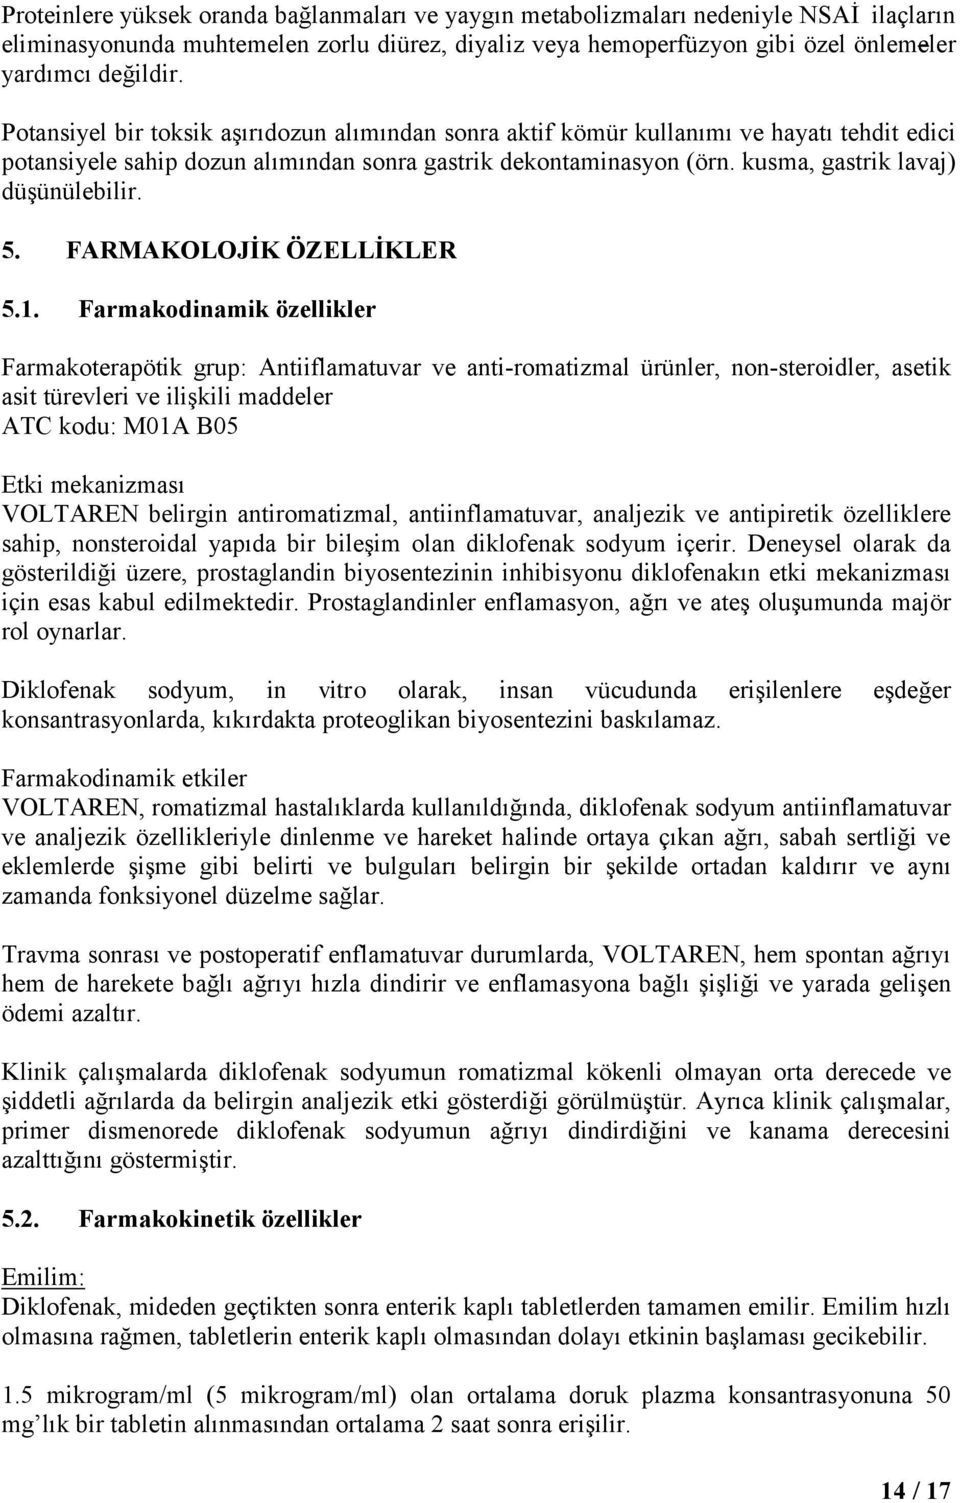 5. FARMAKOLOJİK ÖZELLİKLER 5.1.